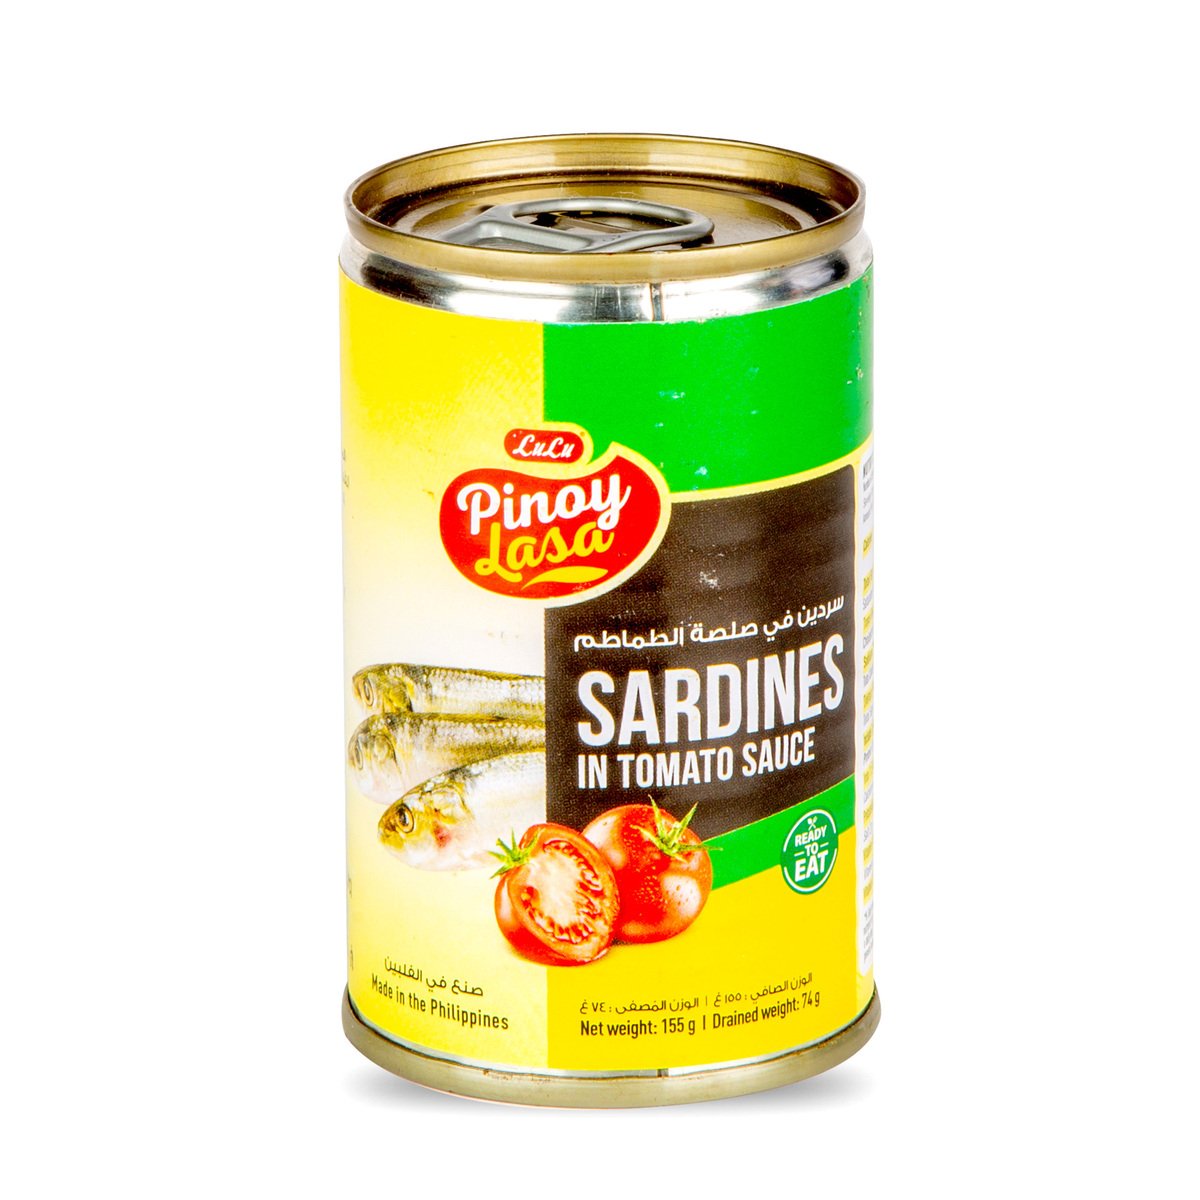 Buy LuLu Pinoy Lasa Sardines in Tomato Sauce 155 g Online at Best Price | Canned Sardines | Lulu UAE in UAE